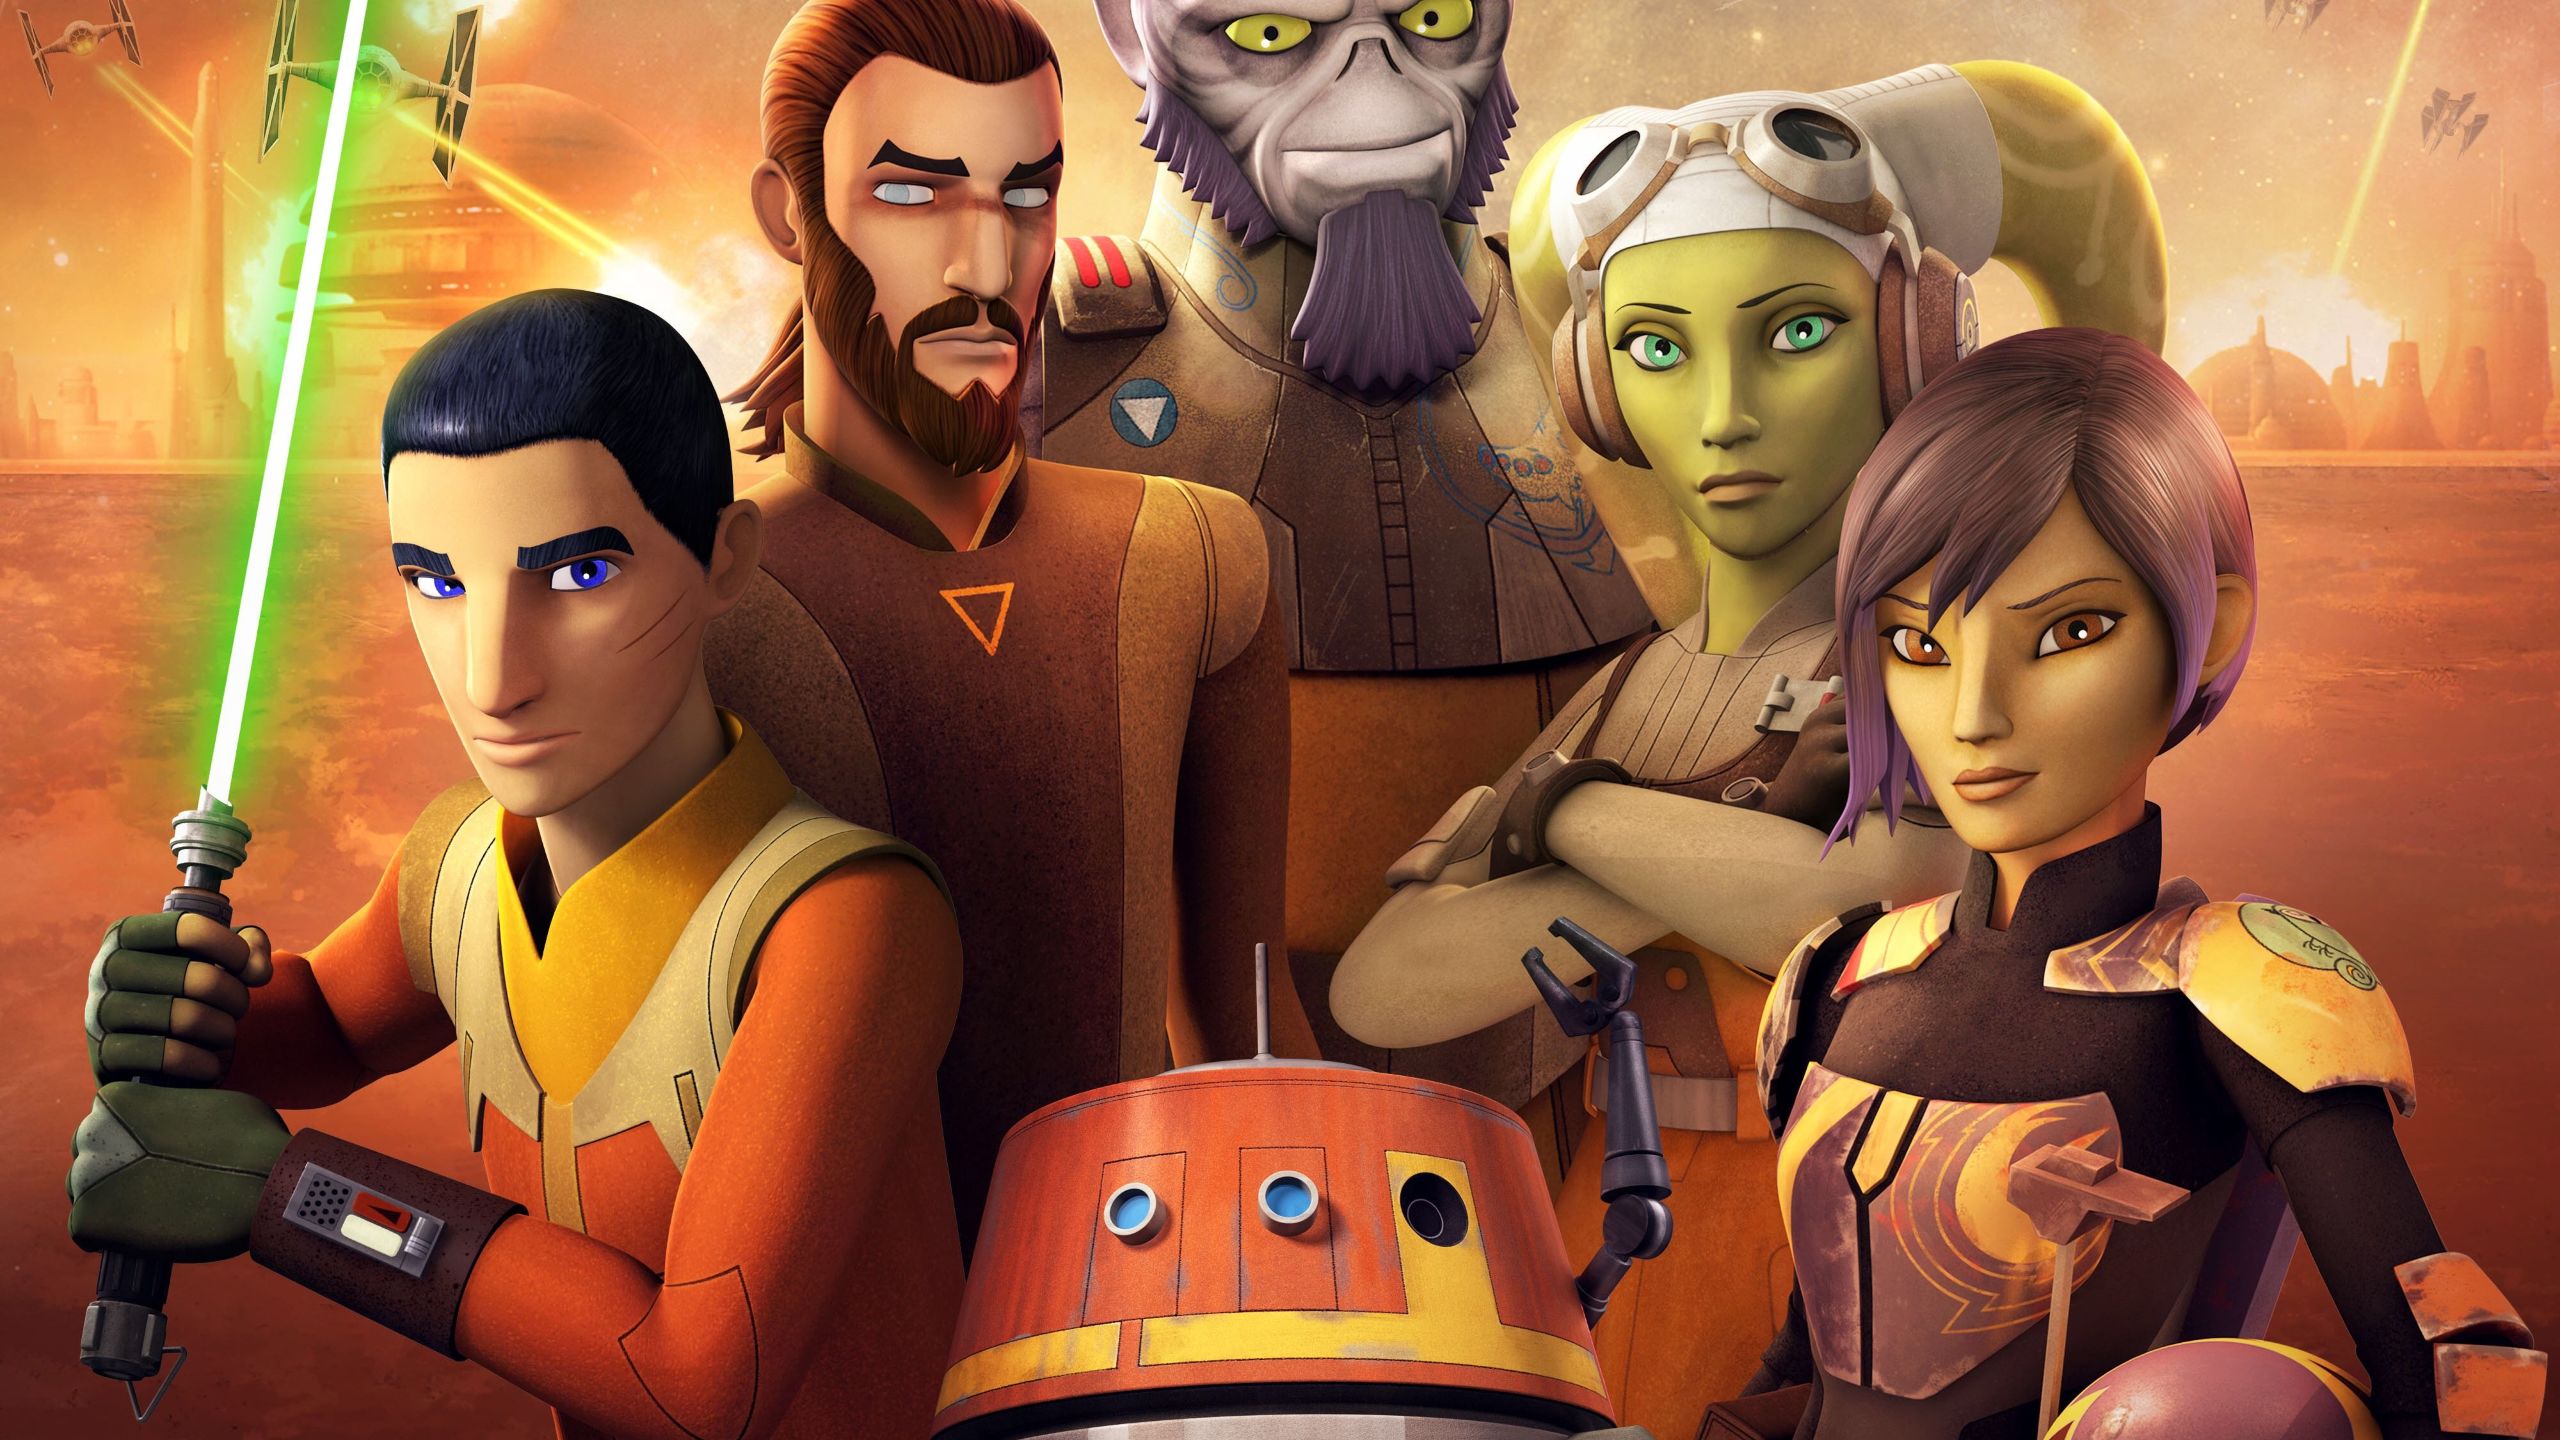 star wars rebels fond d'écran,dessin animé,animation,personnage fictif,illustration,jeu de rôle en ligne massivement multijoueur